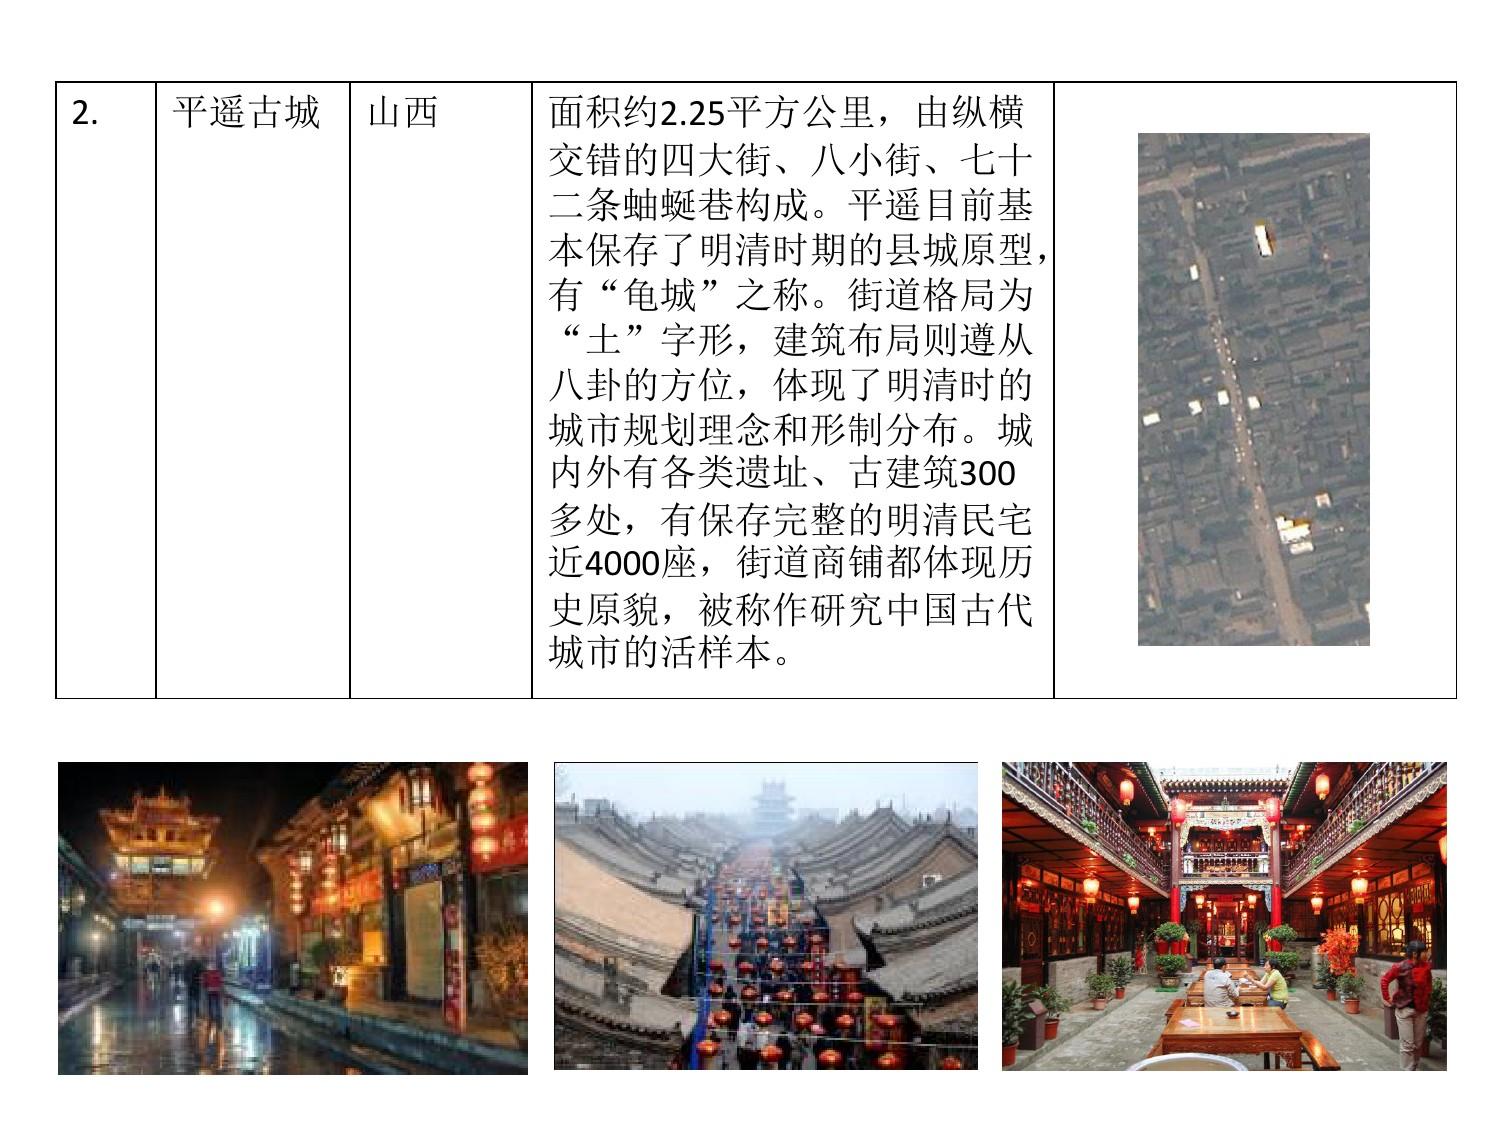 中国传统商业街案例分析(详细)